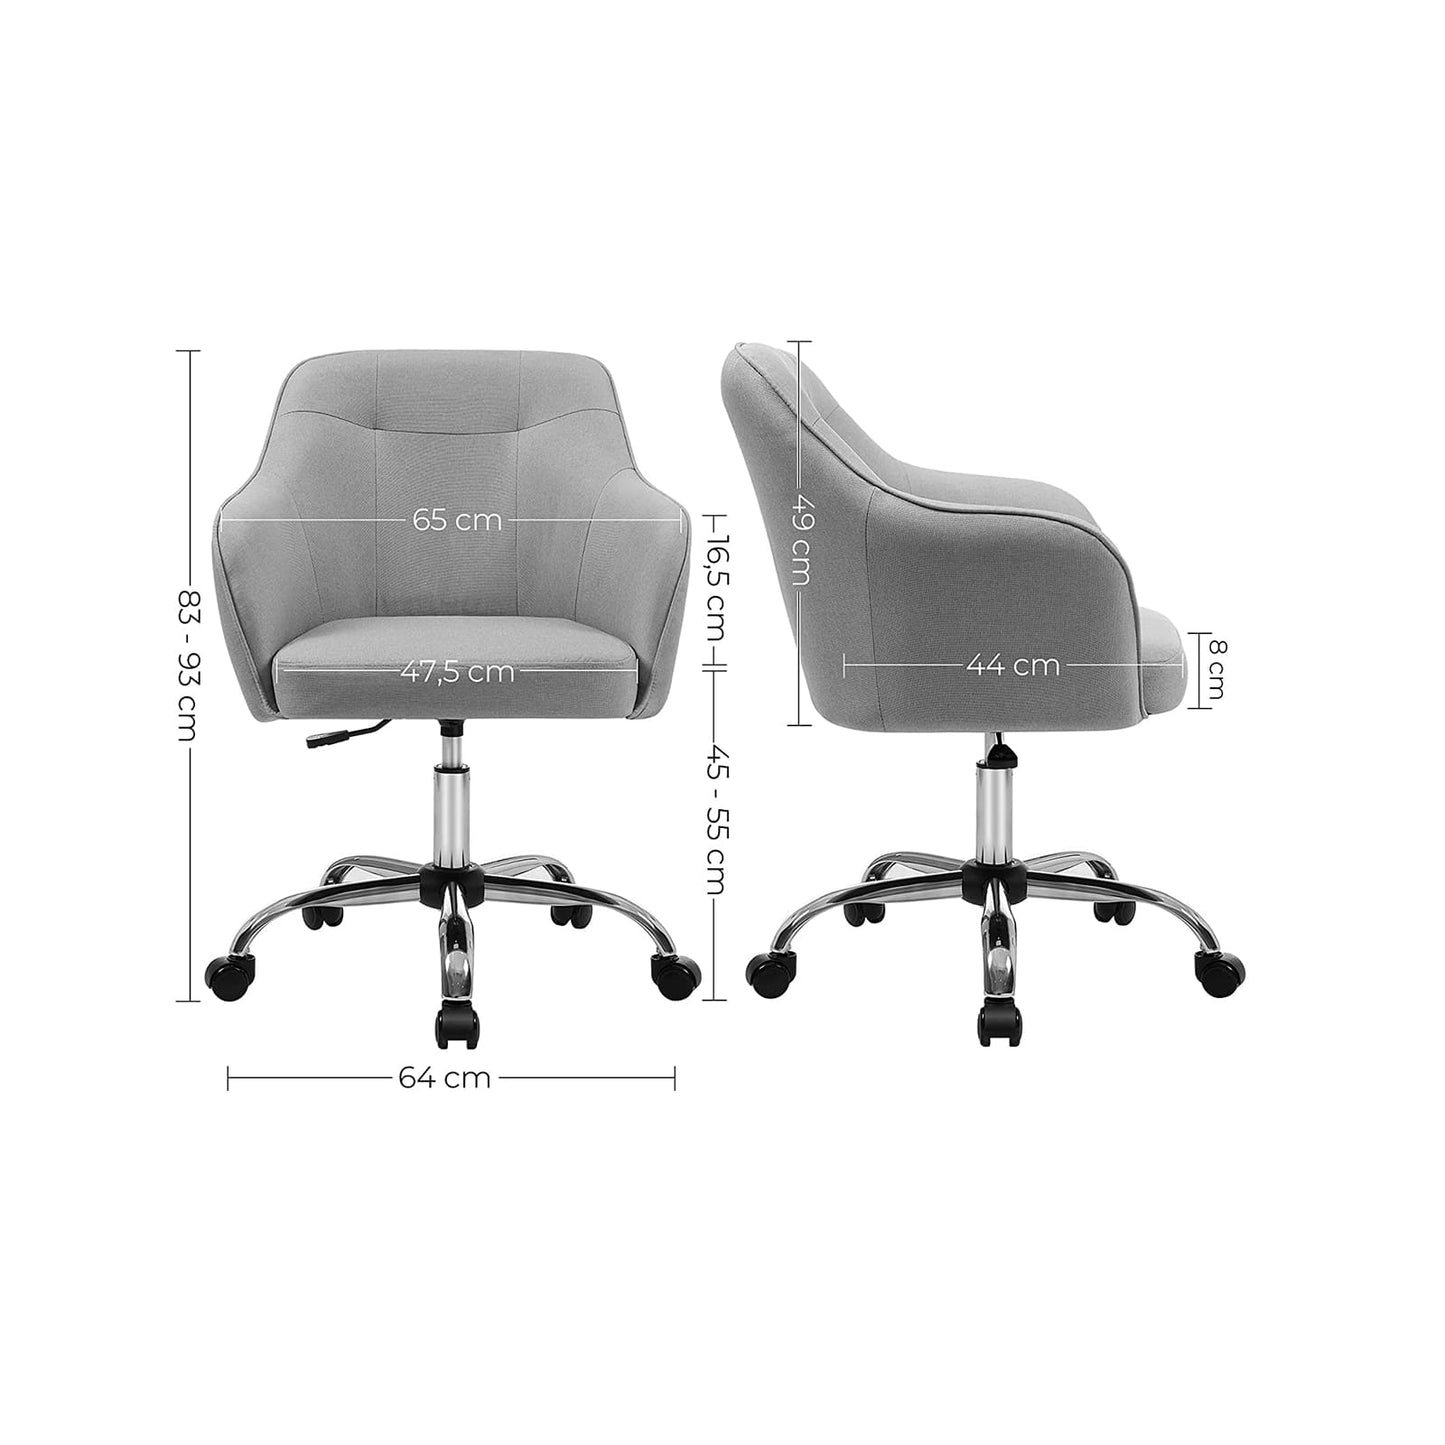 Une chaise réglable H83-93 cm, confortable, idéale pour bureau, chambre ou salle d'étude, SONGMICS